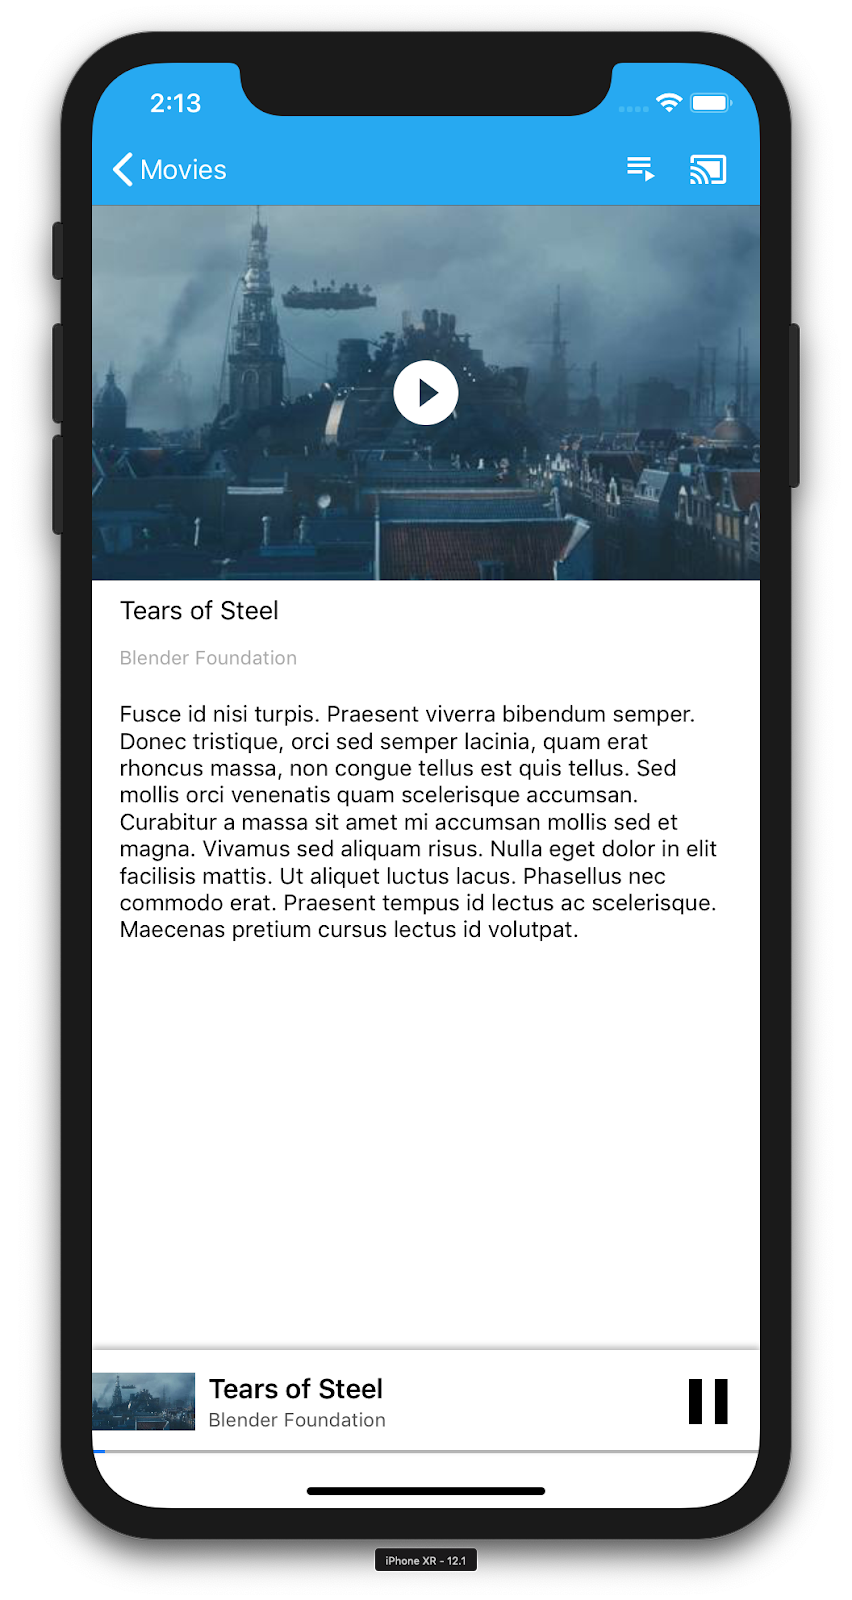 Hình minh hoạ một chiếc iPhone đang chạy ứng dụng CastVideos, hiển thị thông tin chi tiết về một video cụ thể (&quot;Tales of Steel&quot;). Ở dưới cùng là trình phát thu nhỏ